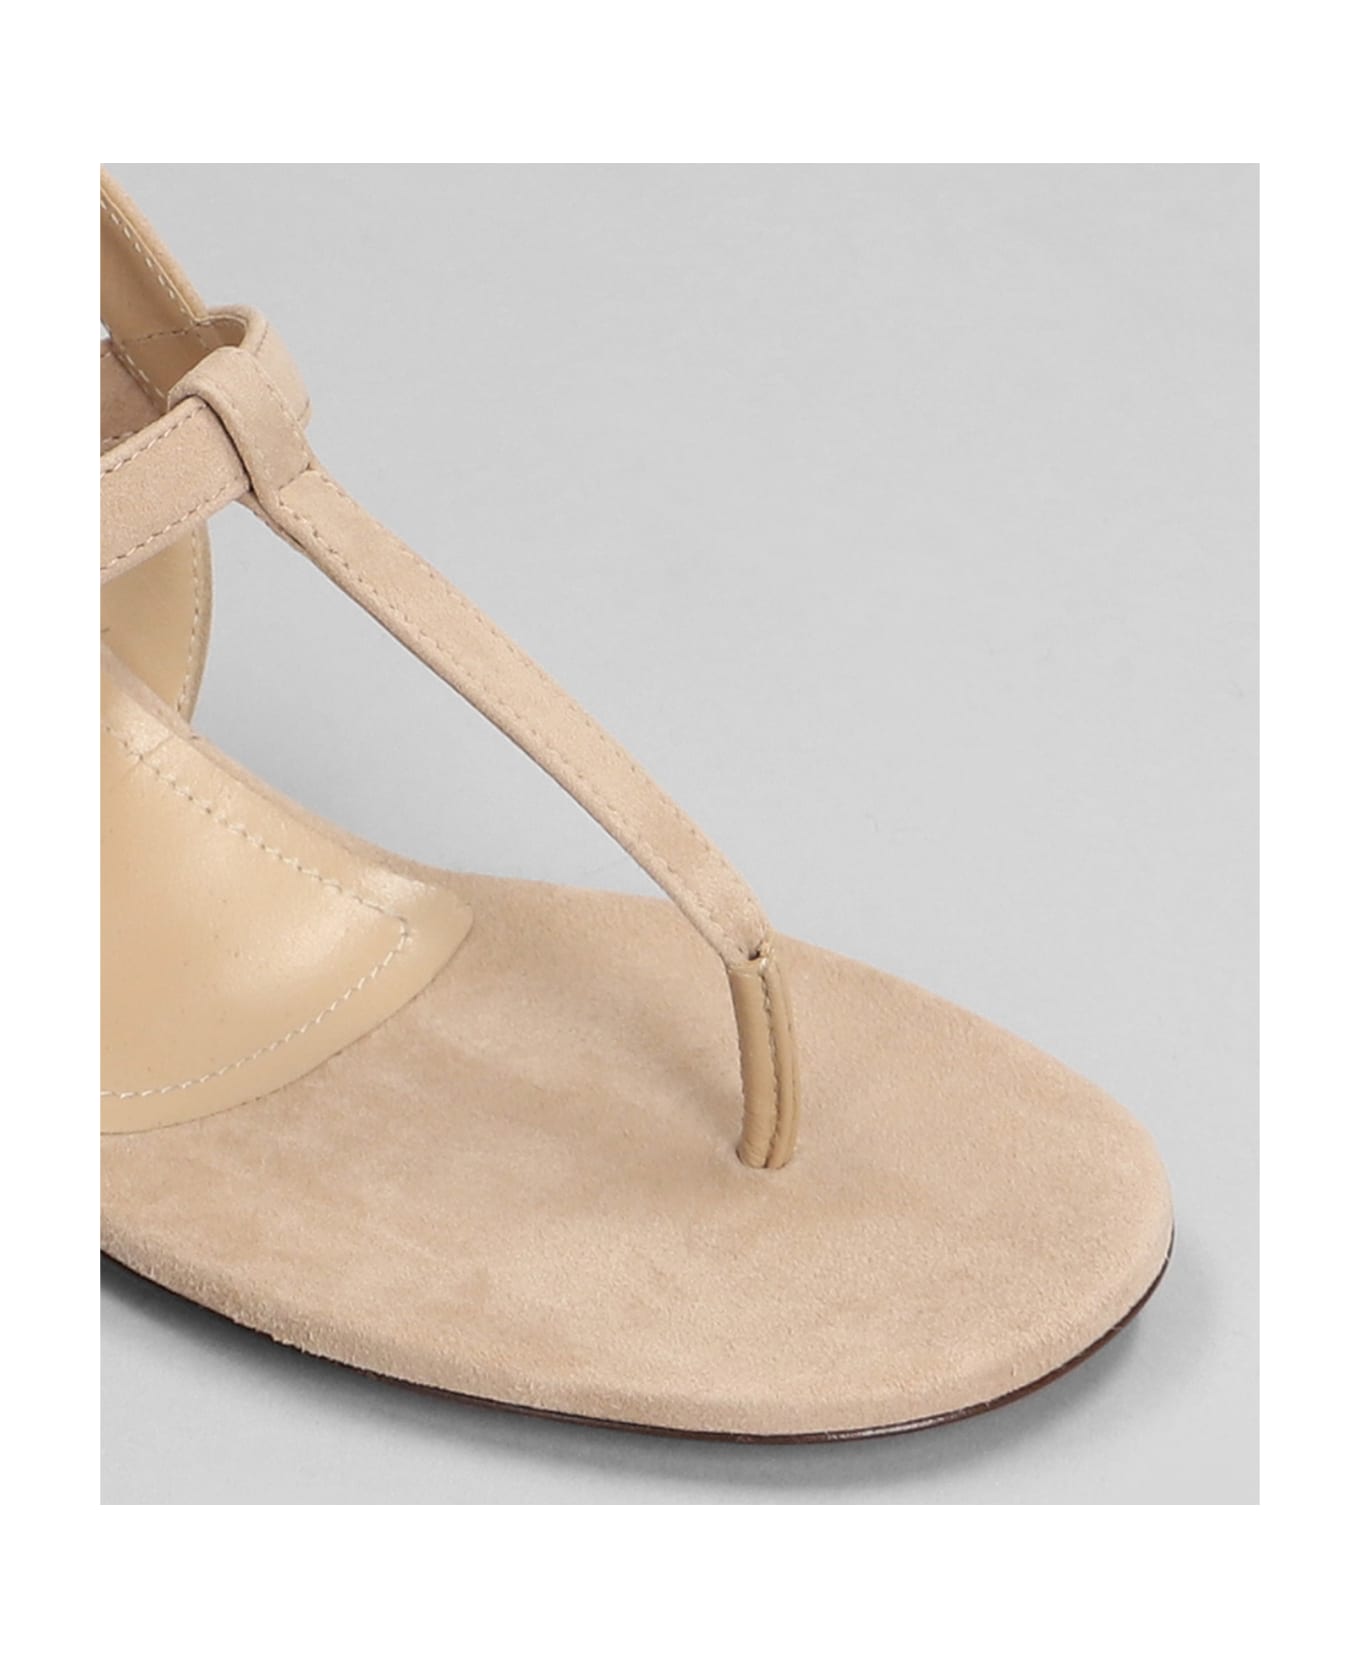 Relac Sandals In Beige Suede - beige